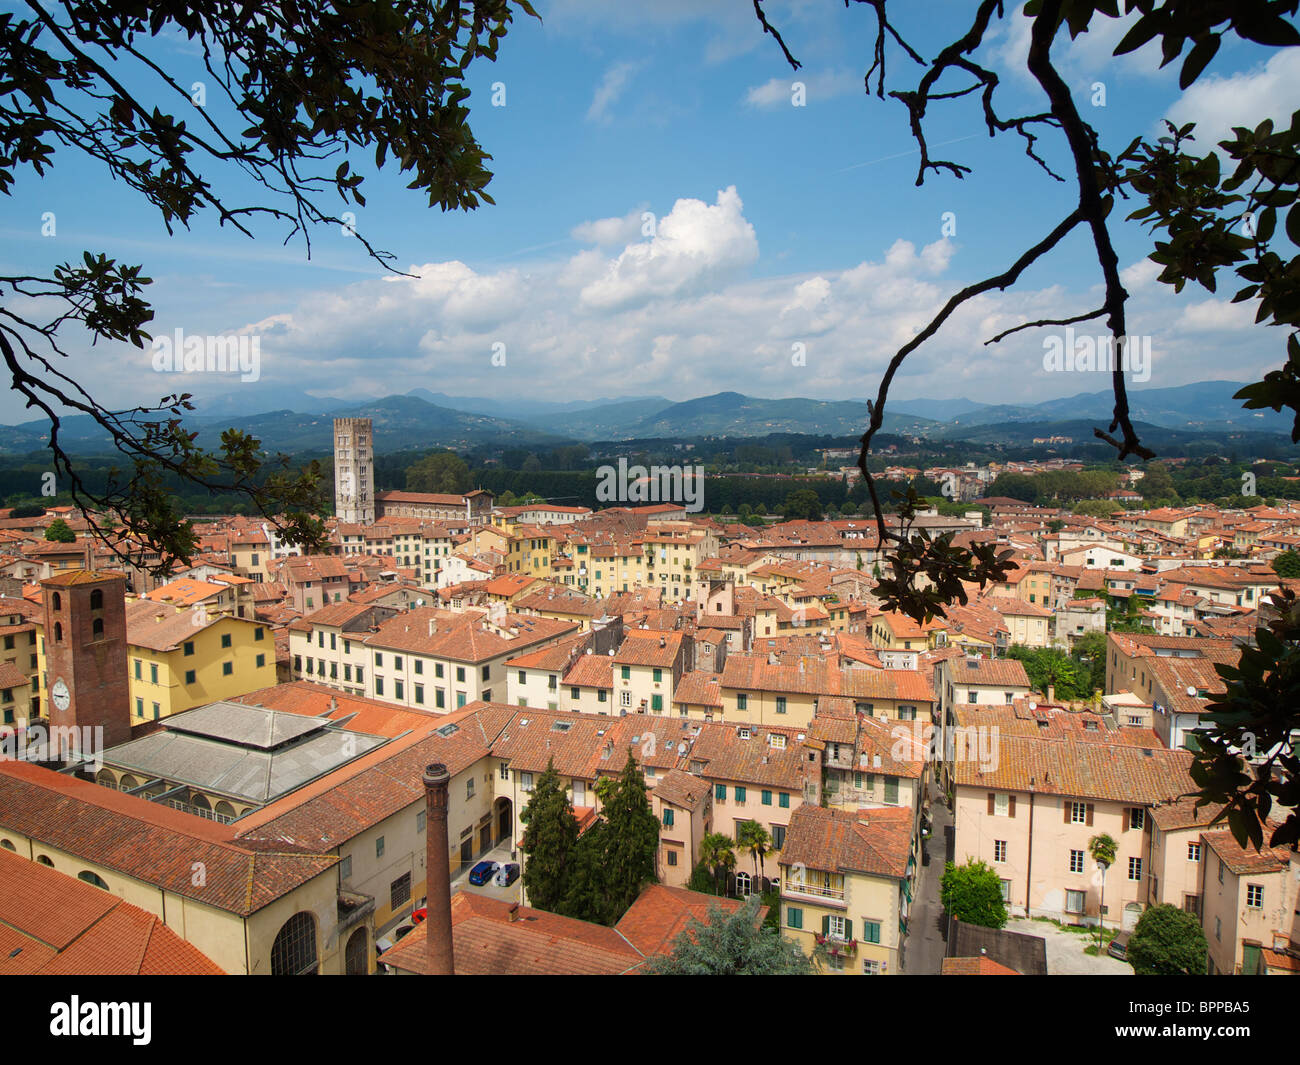 La ville historique de Lucca vu de Torre Guinigi avec la célèbre Piazza Amfiteatro dans le centre. La toscane, italie Banque D'Images